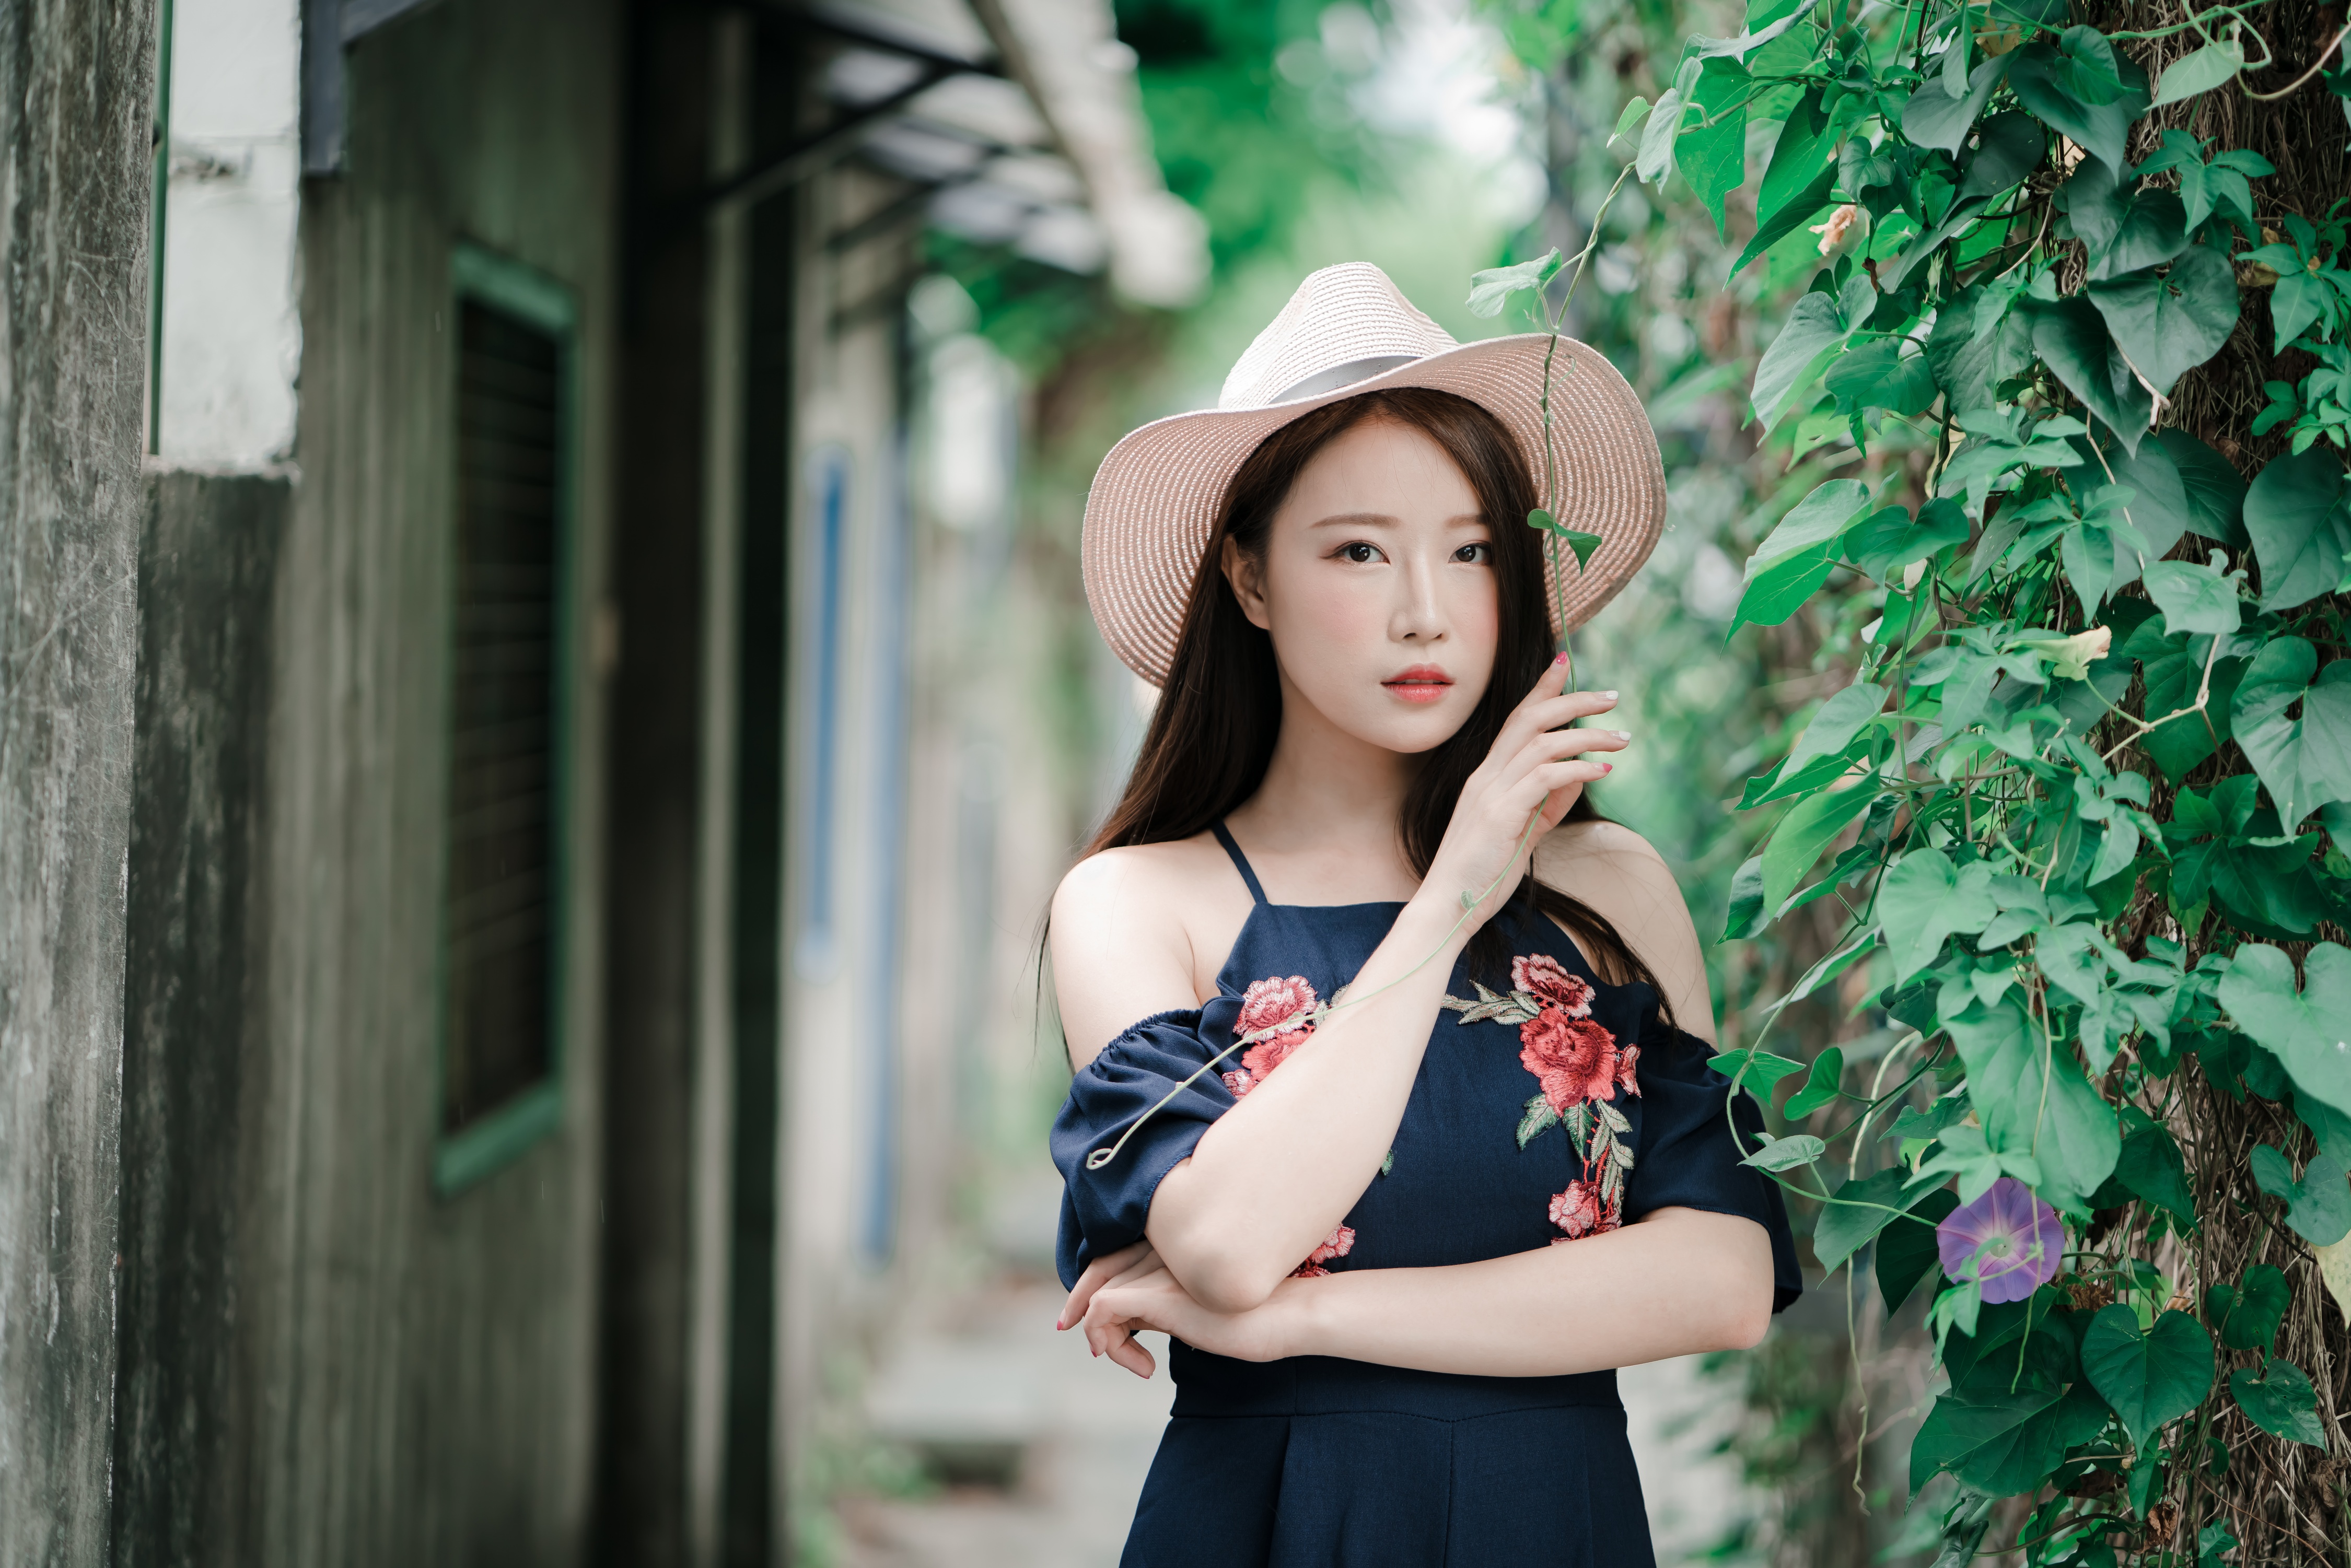 People 4500x3002 Asian model women long hair brunette depth of field dress straw hat bushes alleyway hat makeup leaves women outdoors